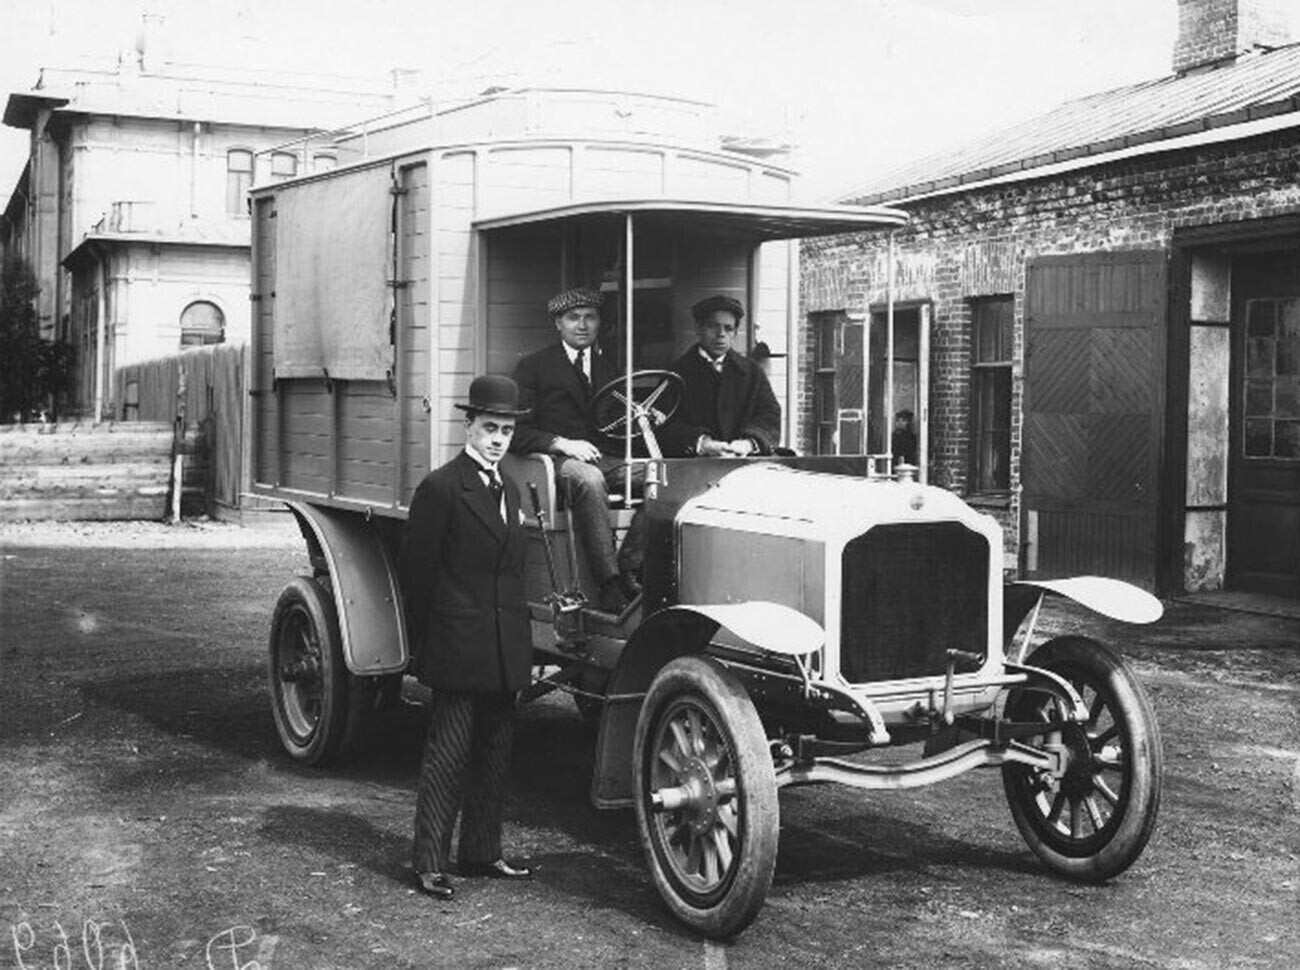 Mobil rumah sakit militer, tahun 1911